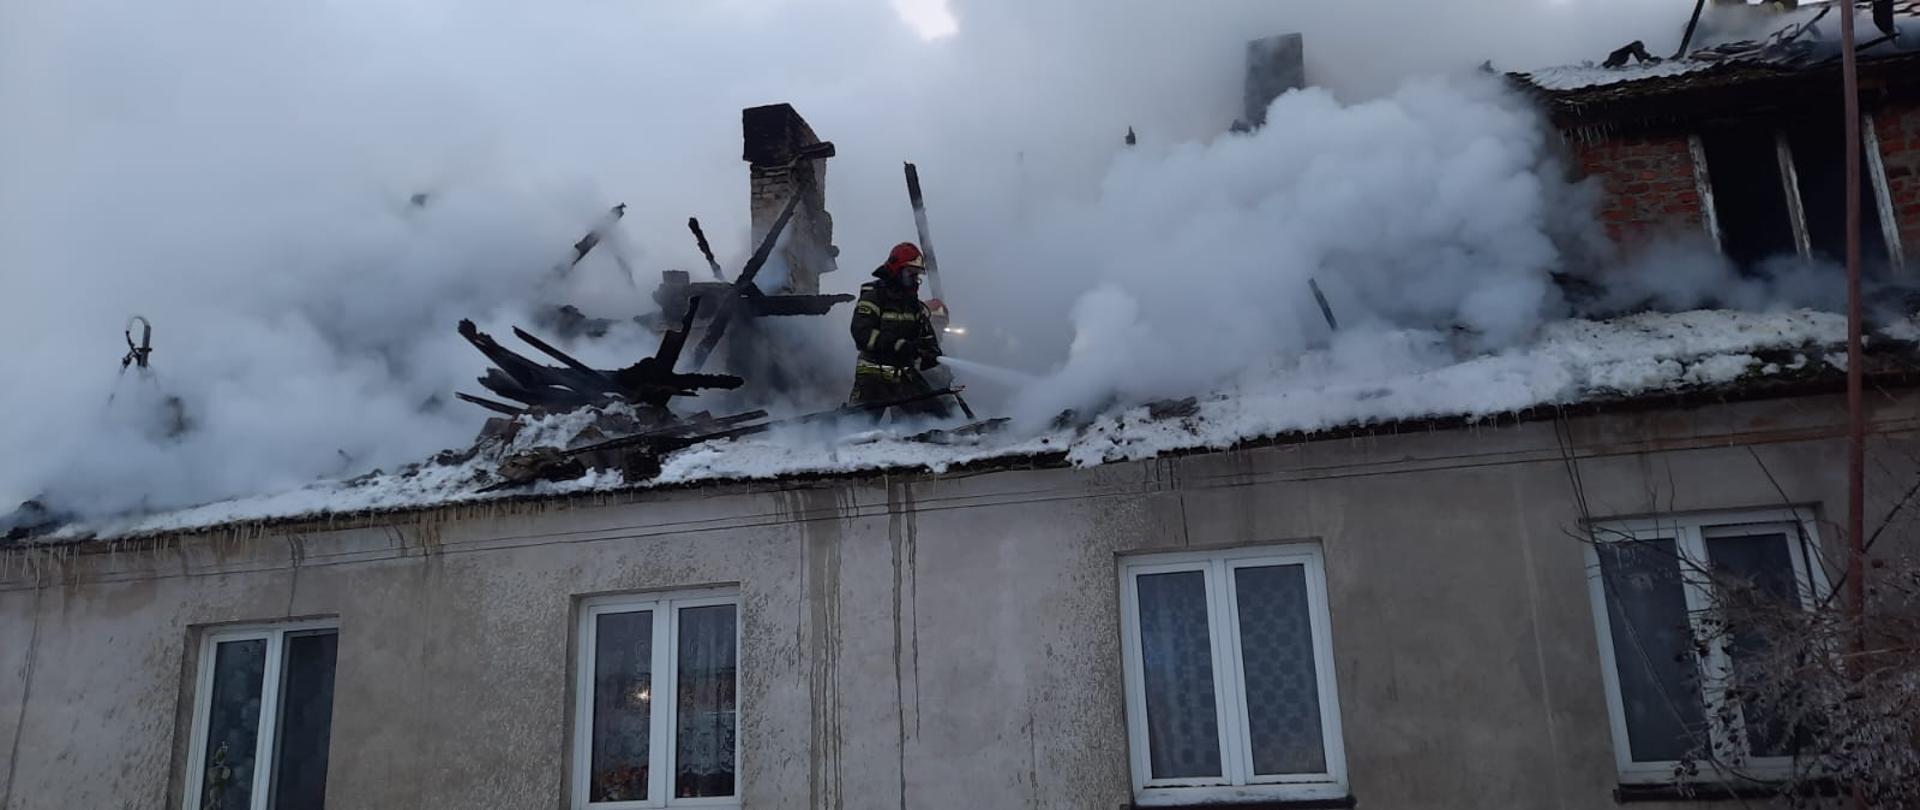 Pożar dachu i poddasza budynku mieszkalnego ze strażakami gaszącymi płomienie wodą stojąc na poddaszu przy dużym zadymieniu